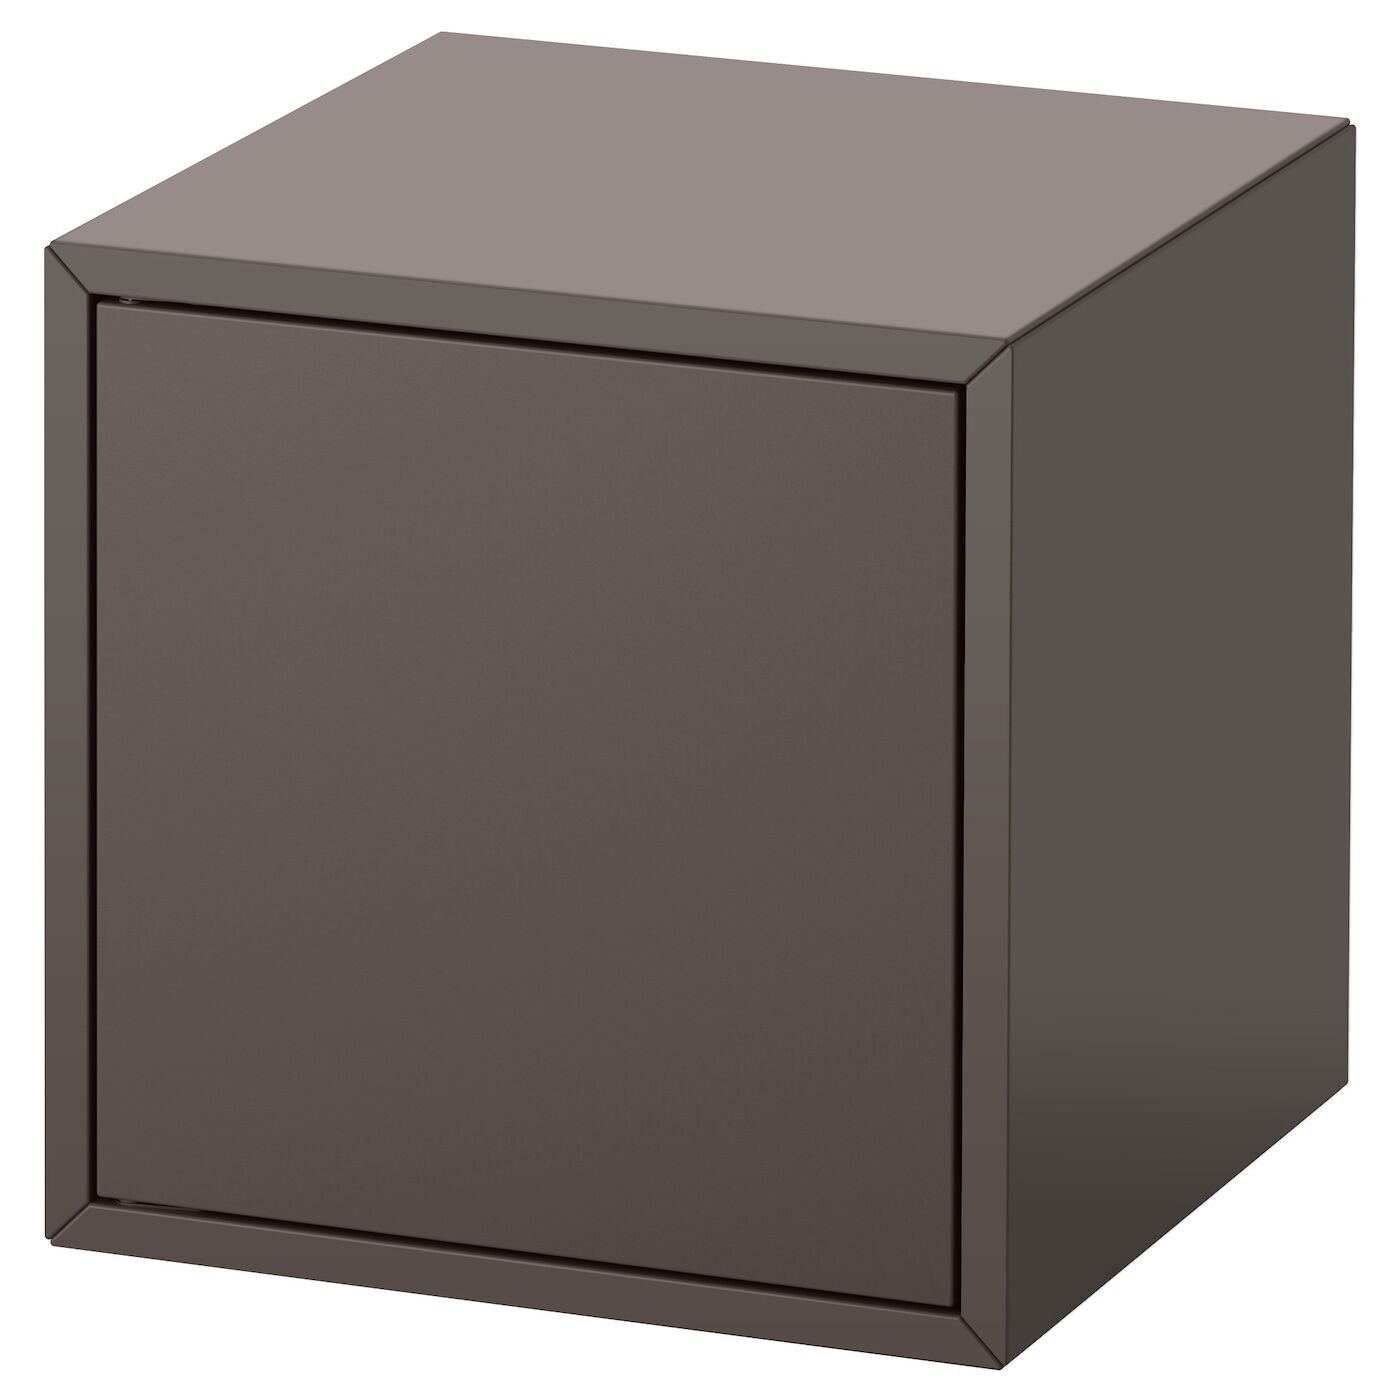 IKEA Estantería de cubos Gris oscuro Gris oscuro 35x35x35 cm